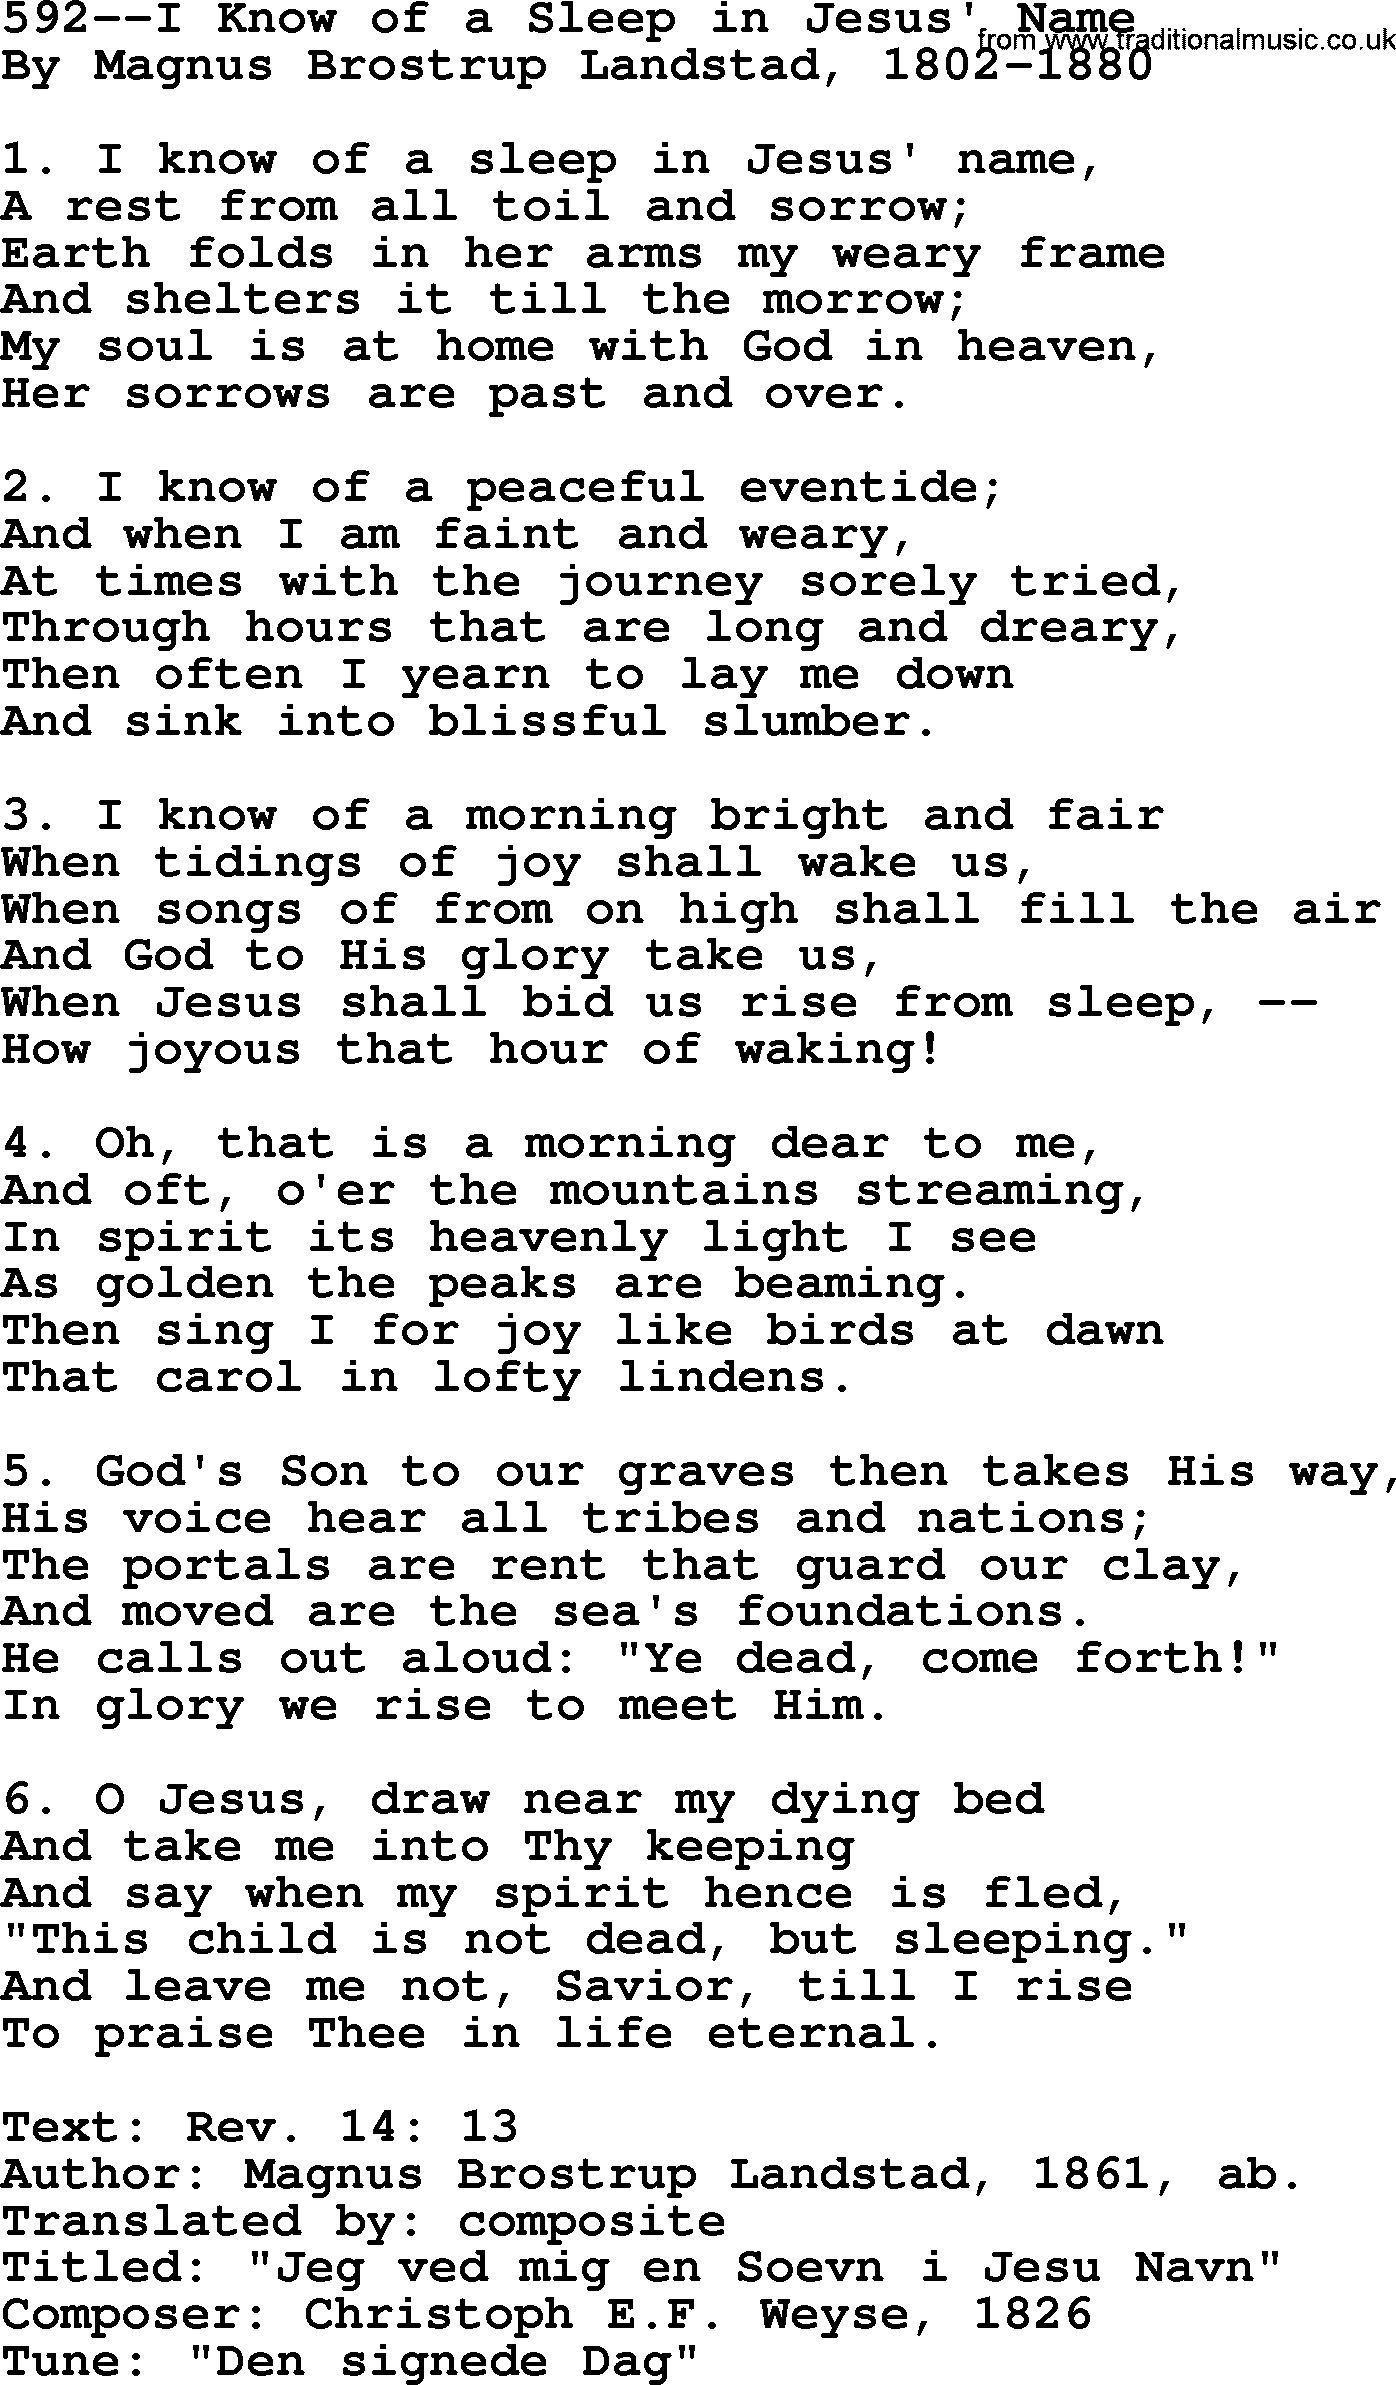 Lutheran Hymn: 592--I Know of a Sleep in Jesus' Name.txt lyrics with PDF